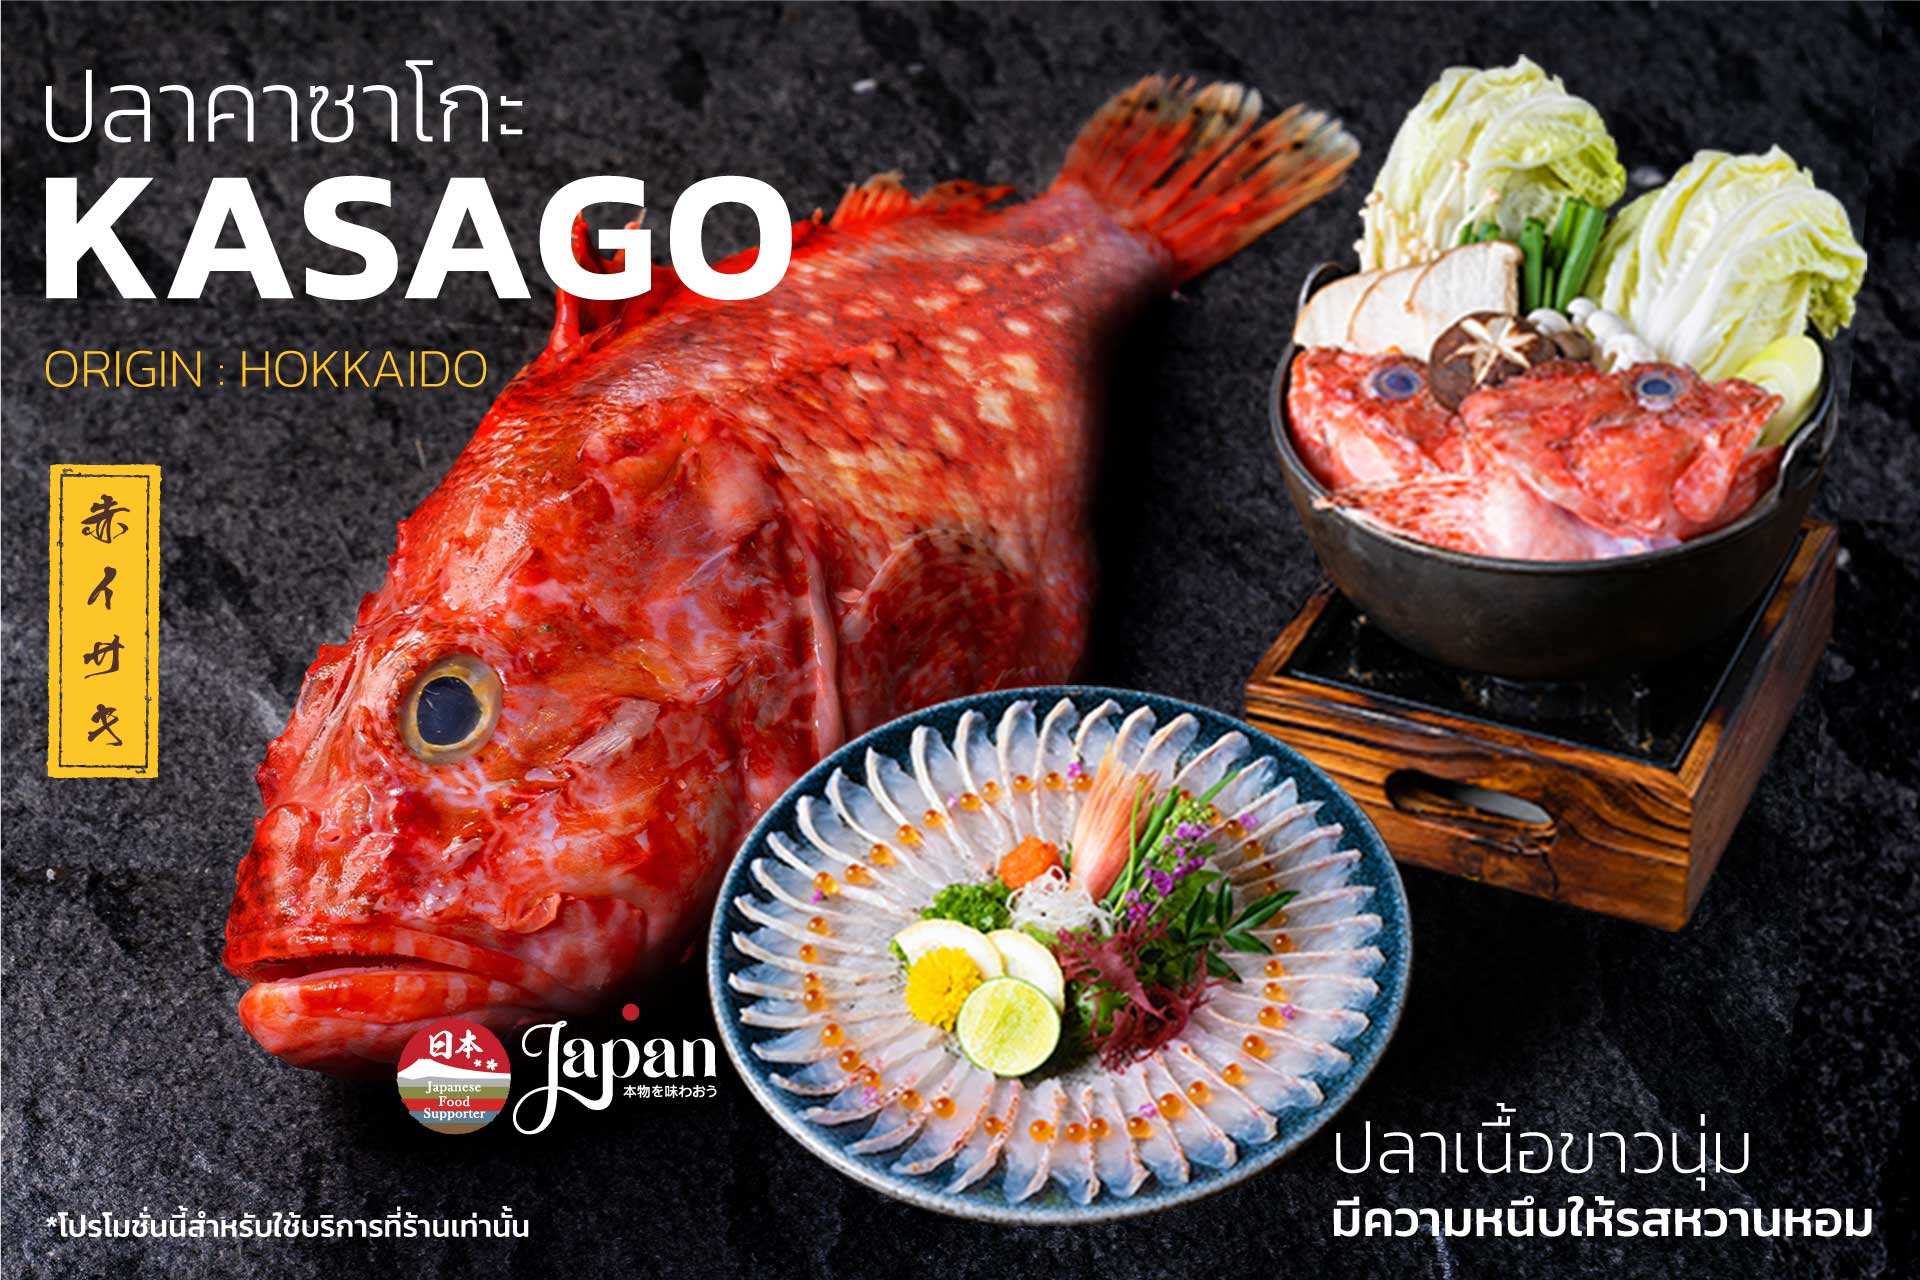 อาหารญี่ปุ่น แซลมอน ภาษาญี่ปุ่น คือ ชาเกะ มาทาน ปลาส้ม จาก kabocha sushi delivery